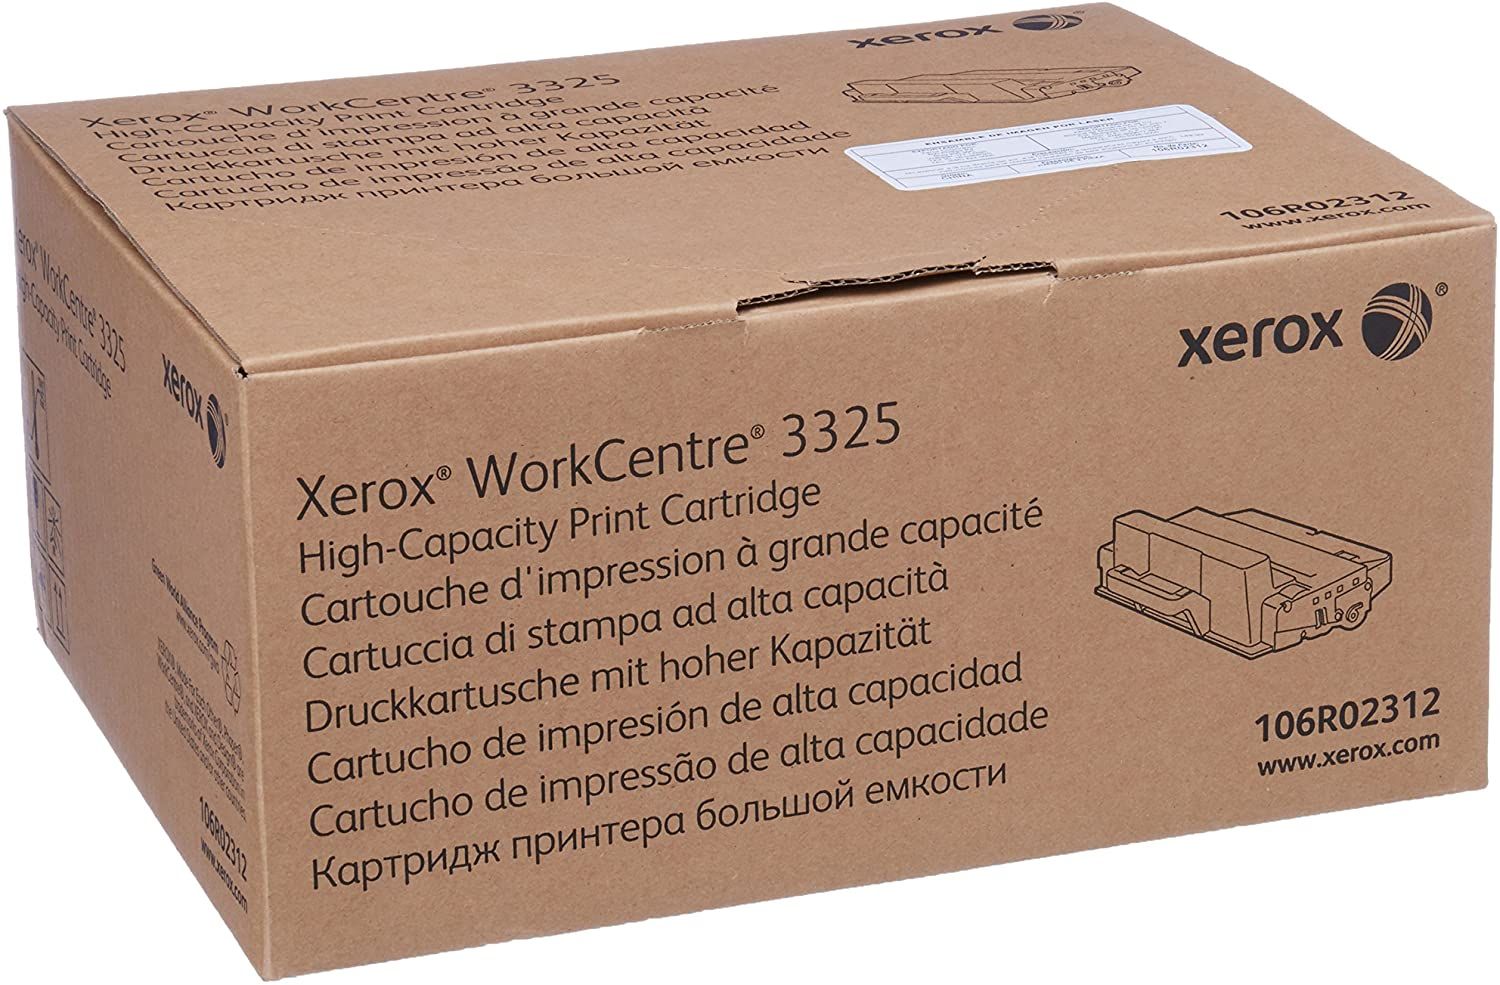 Картриджи xerox оригинал. Xerox 106r02312. Xerox 3325 картридж. Принт-картридж для Xerox WC 3325 MFP (106r02312). Тонер-картридж Xerox 106r02312.